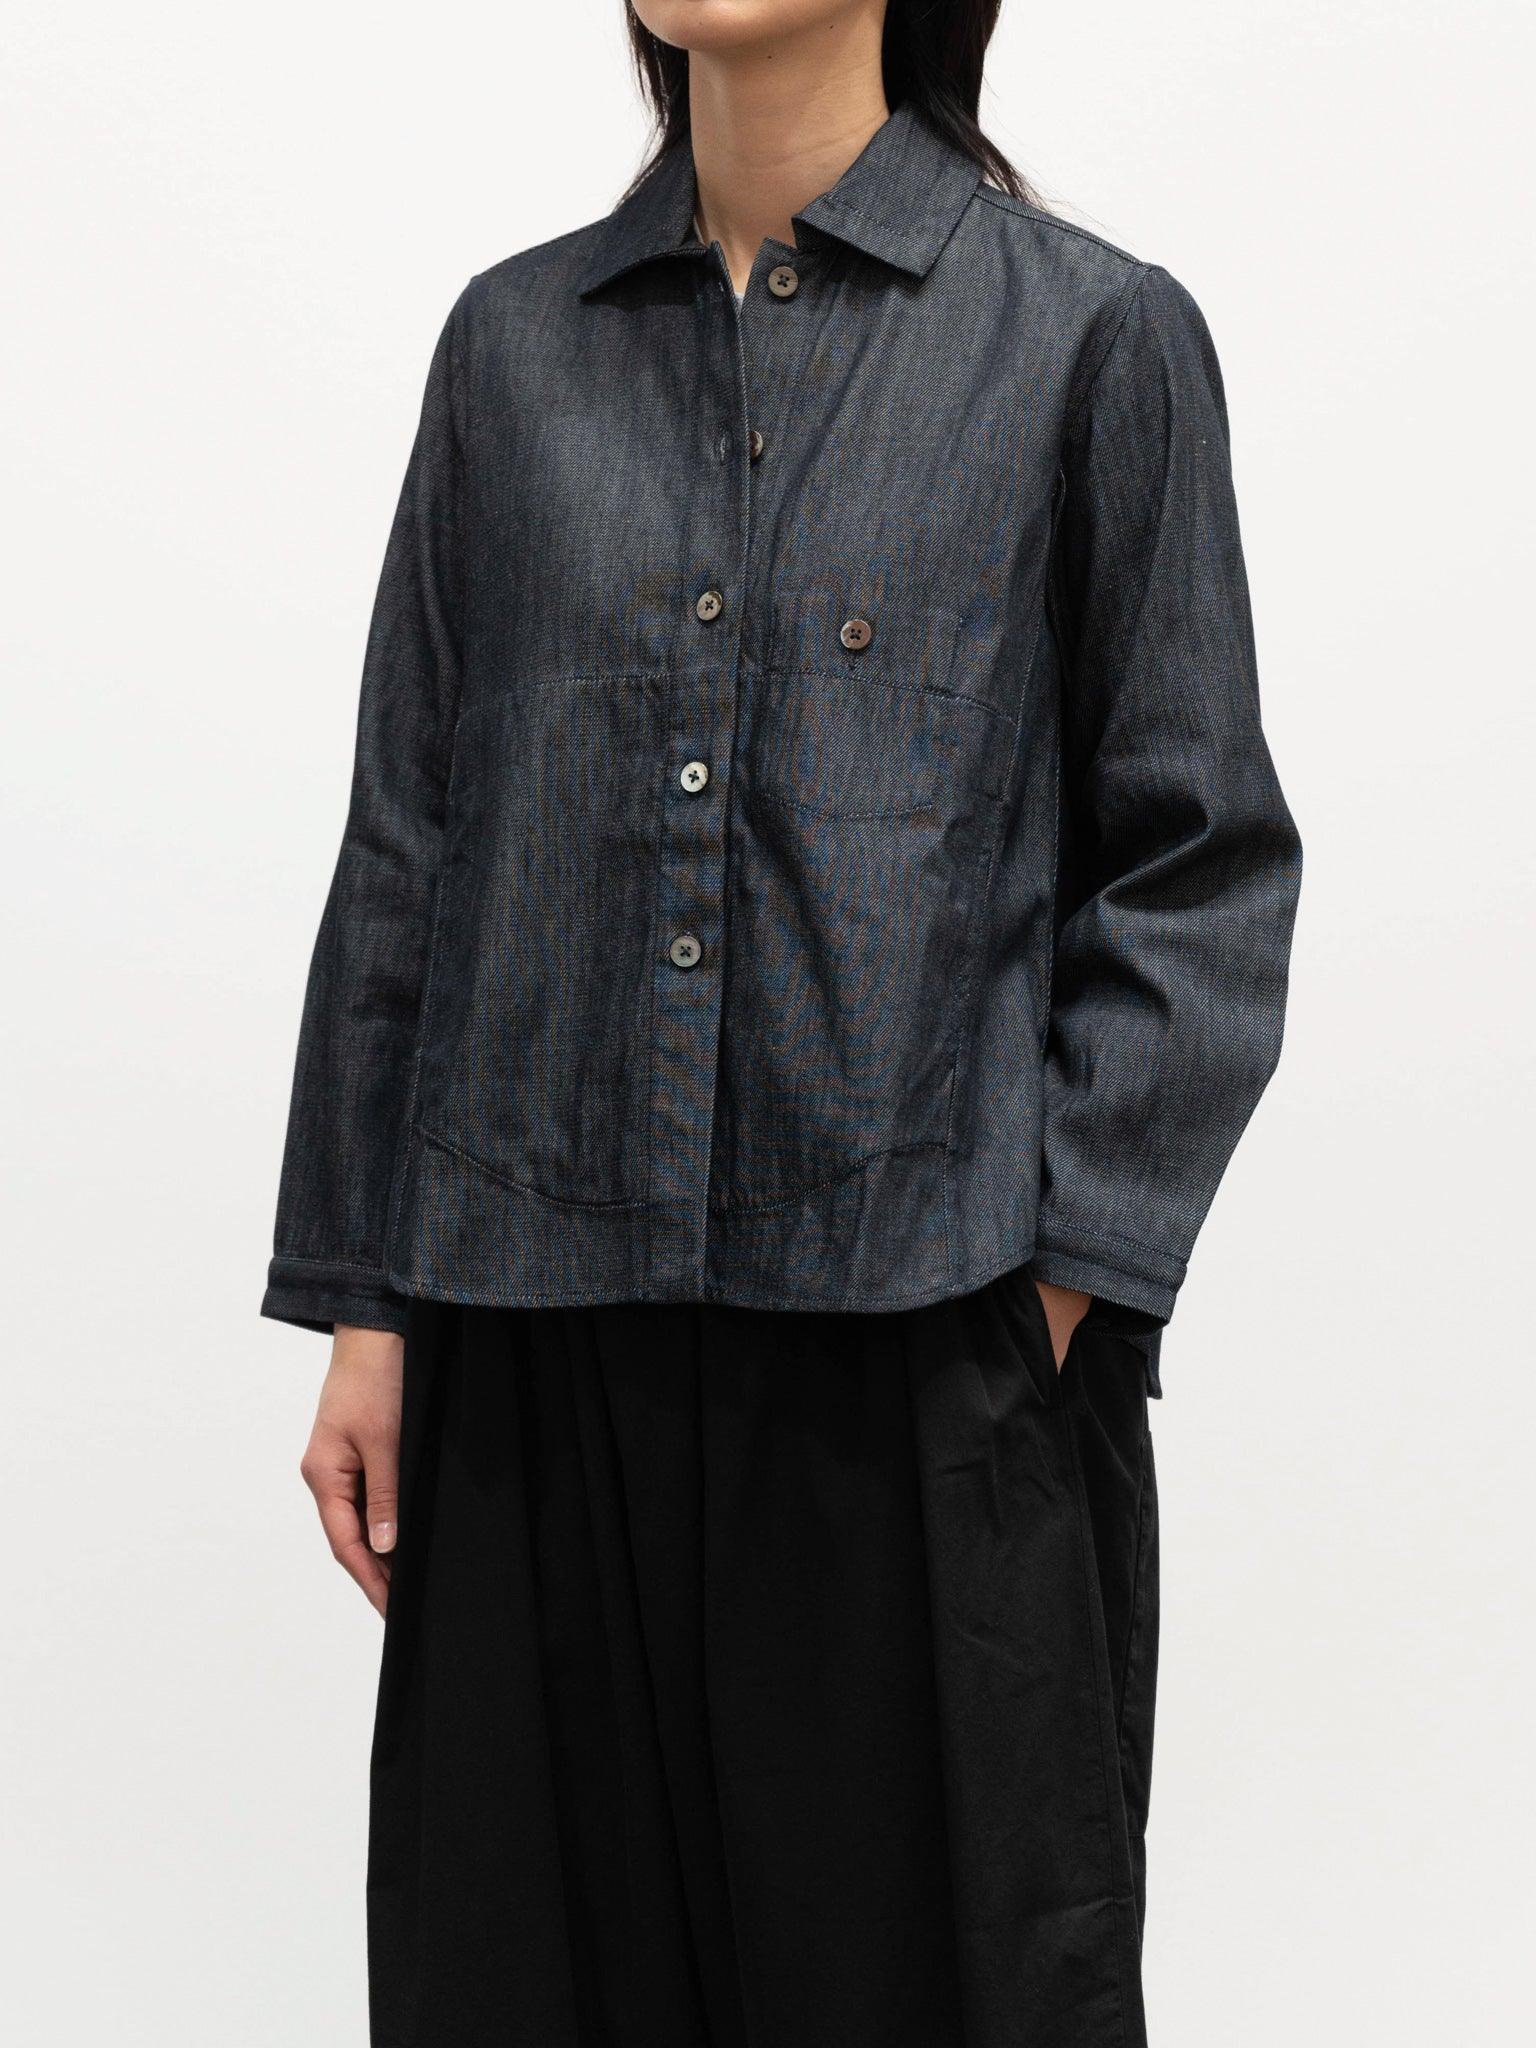 Namu Shop - Jan Machenhauer Kim Shirt Jacket - Denim Cotton